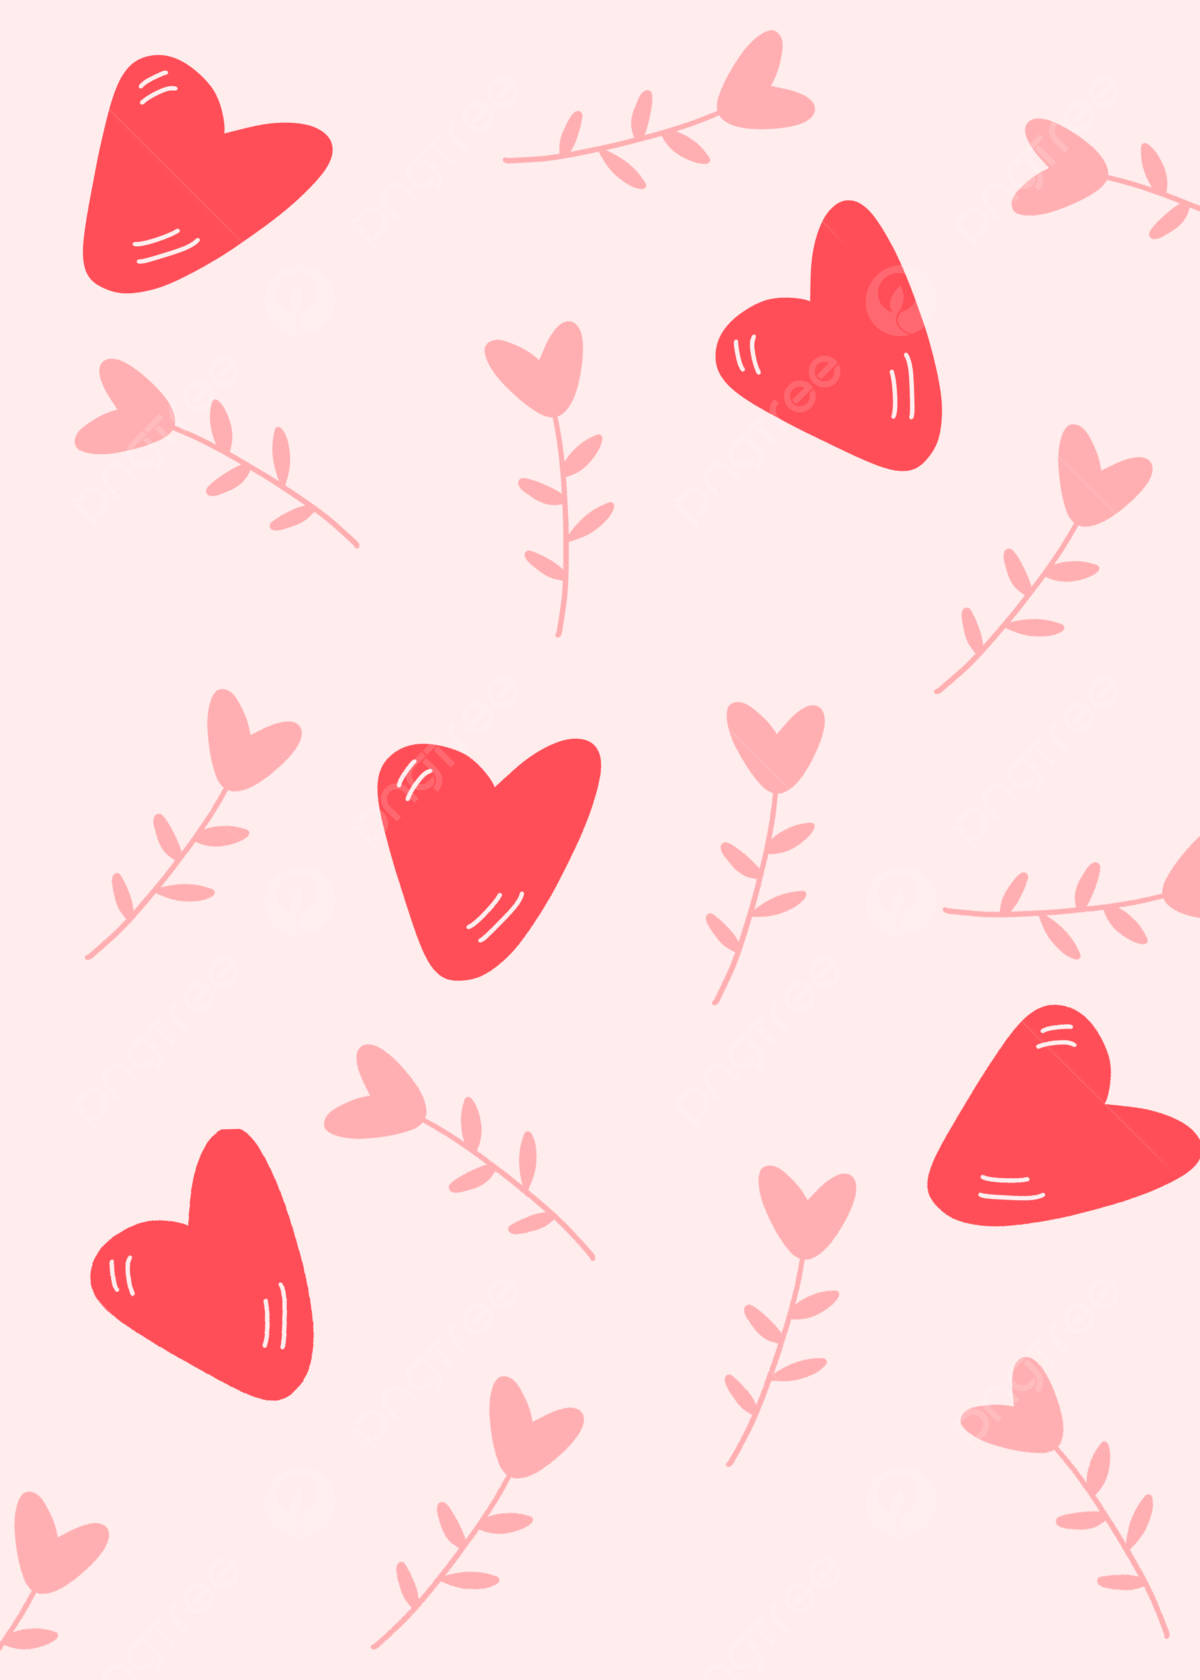 Feieredie Jahreszeit Der Liebe Mit Einem Wunderschönen Tumblr-valentinstags-hintergrundbild. Wallpaper